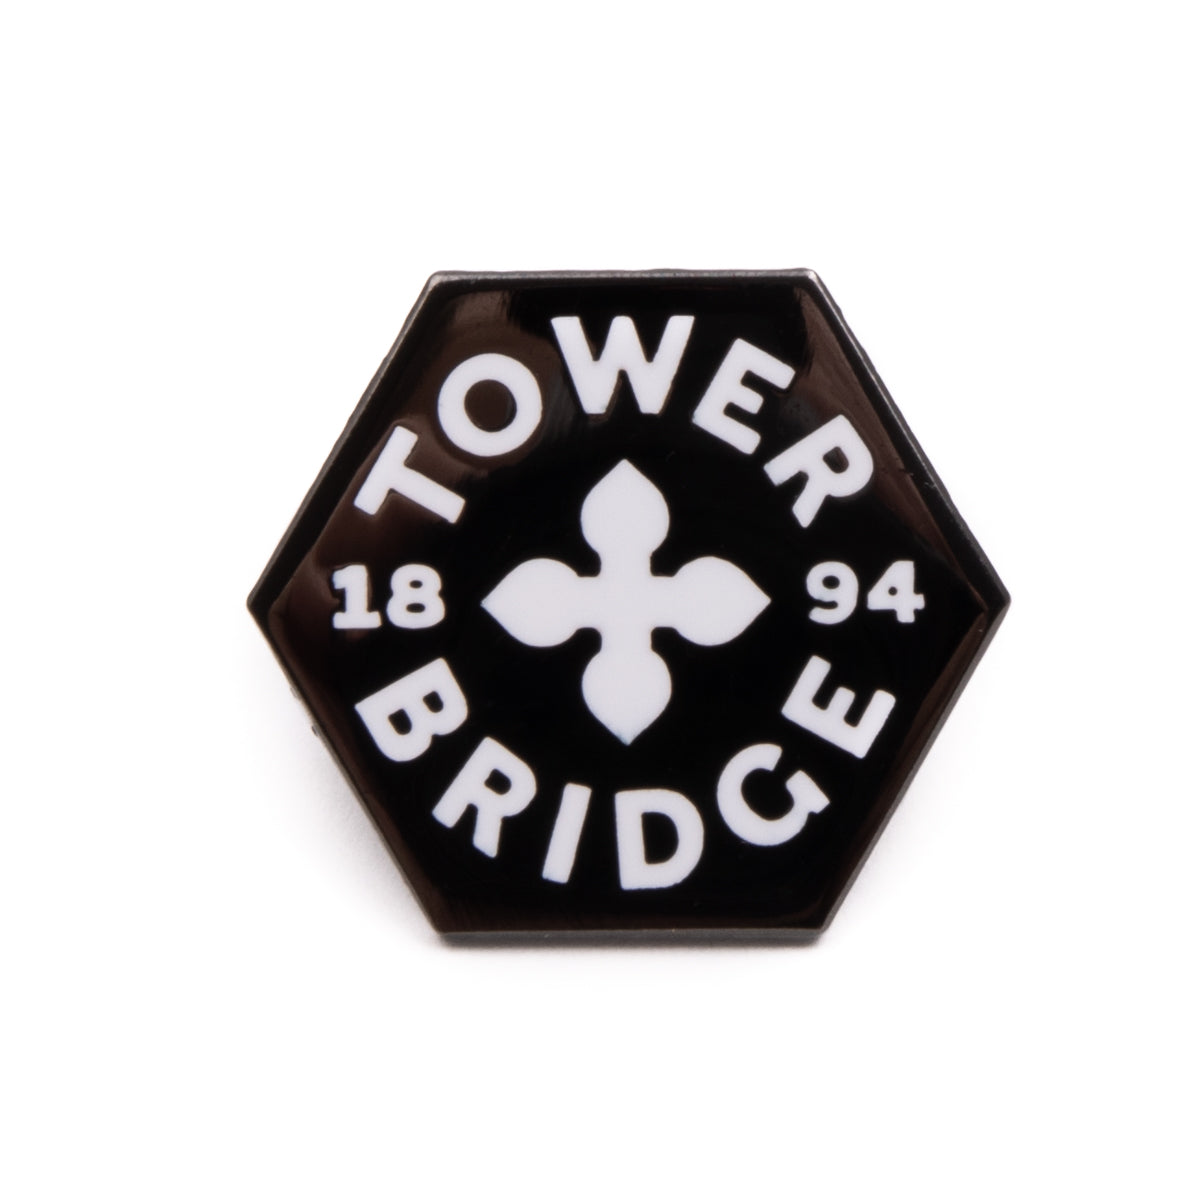 Tower Bridge Logo Pin Badge 2